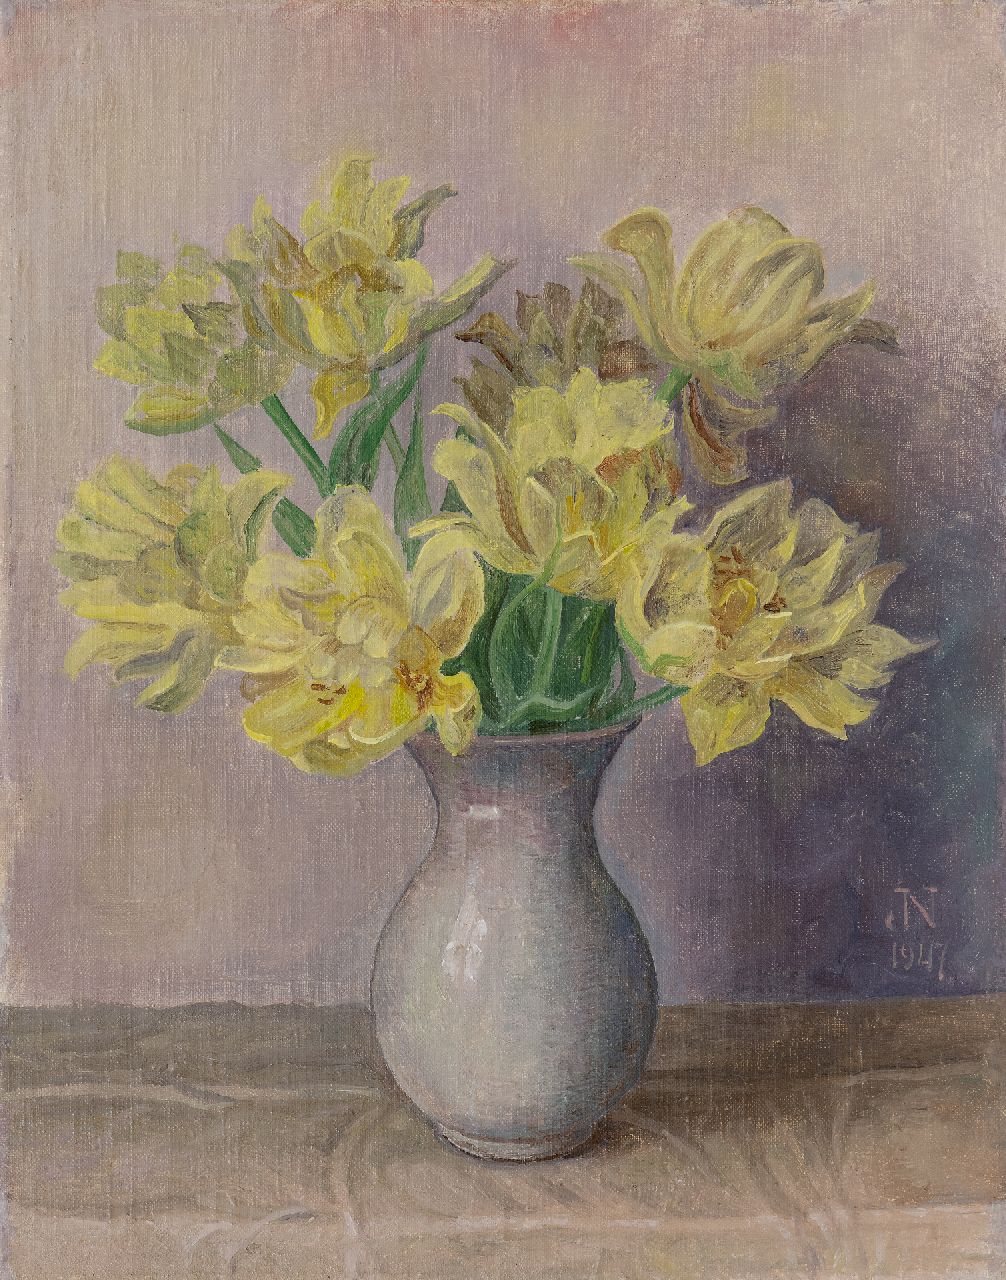 Nieweg J.  | Jakob Nieweg | Schilderijen te koop aangeboden | Gele tulpen, olieverf op doek 45,2 x 35,4 cm, gesigneerd rechtsonder met monogram en gedateerd 1947, zonder lijst